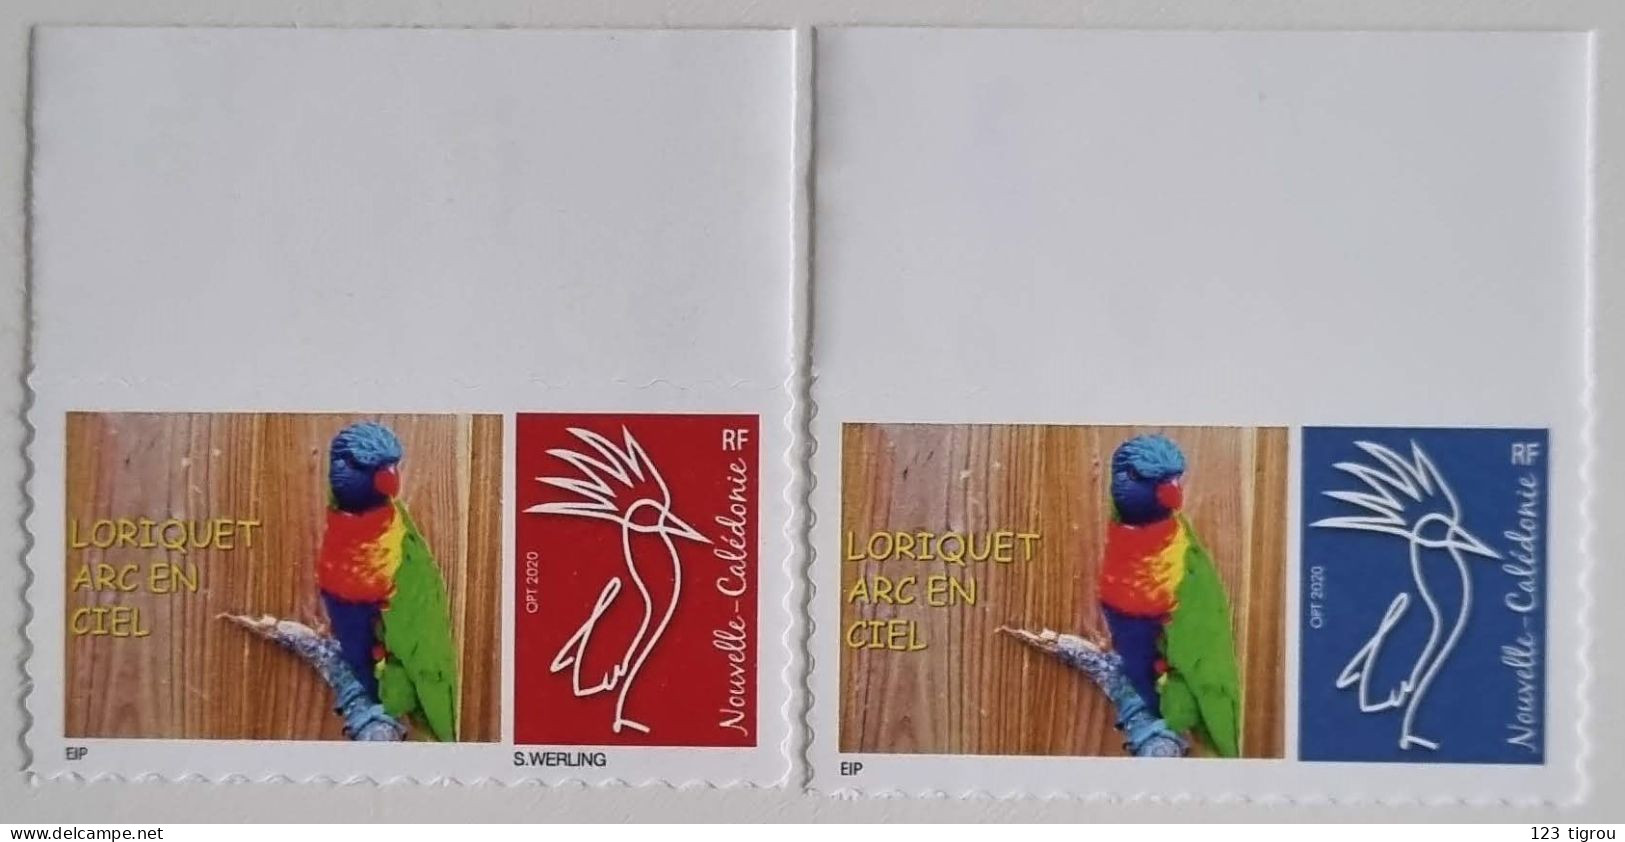 CAGOU PERSONNALISE LOGO LORIQUET ARC EN CIEL OPT 2020 TIRAGE : 40 EX GS TB - Unused Stamps